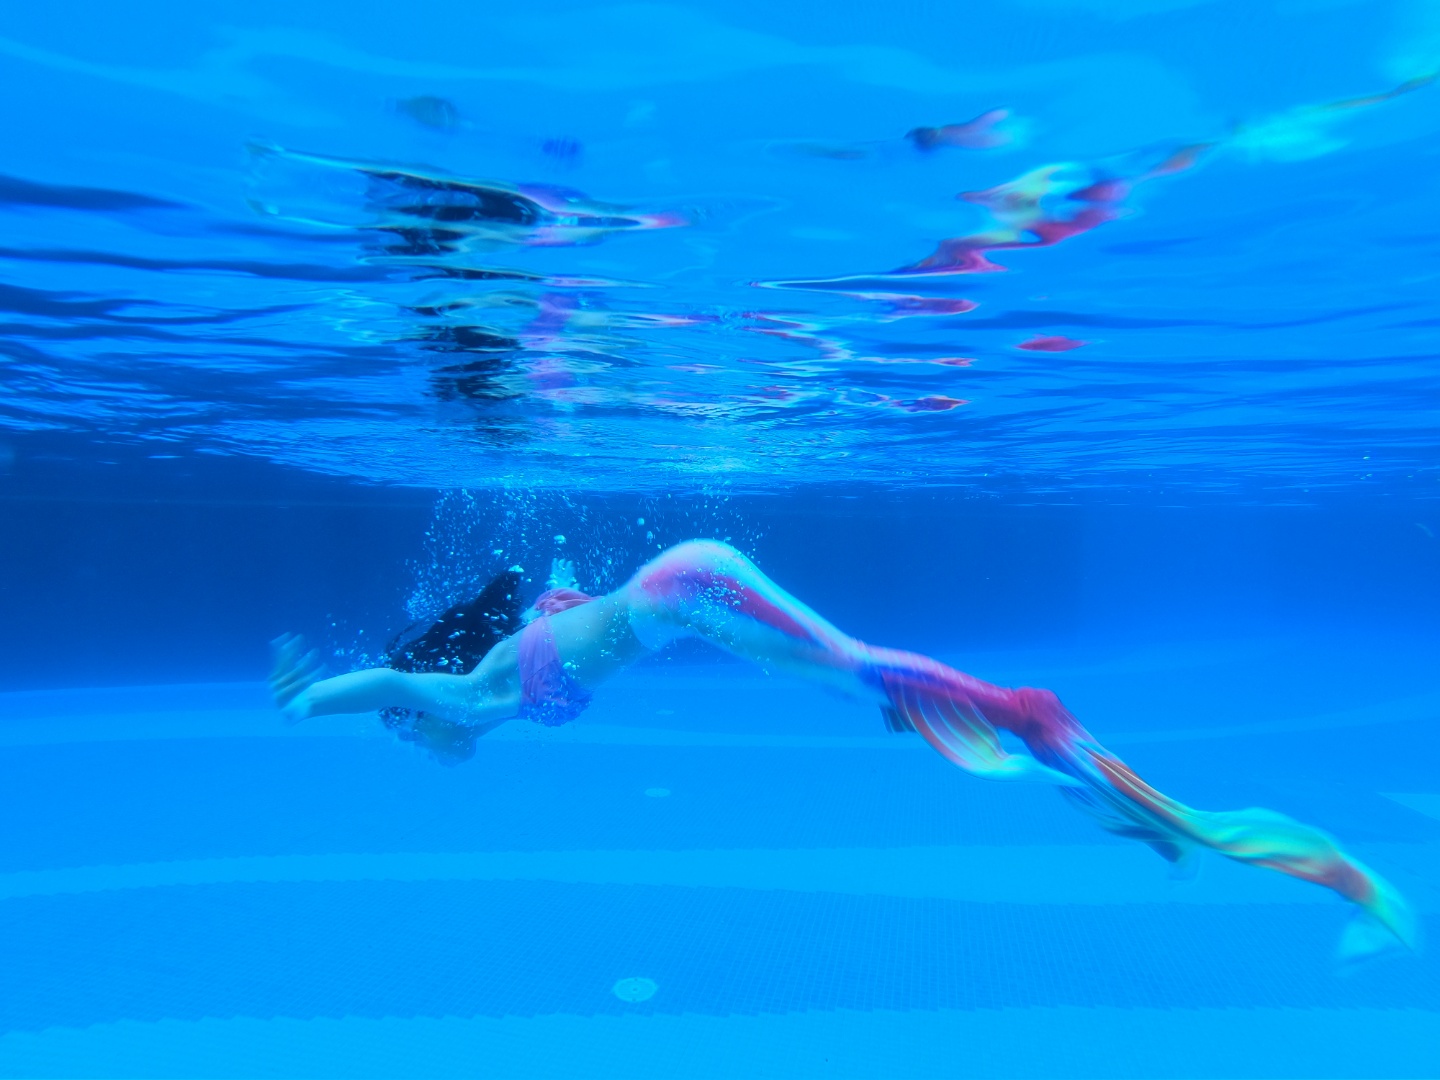 “美人鱼”的背后 95后女孩一个月从不会游泳到下水表演|美人鱼|蔡茜|海底世界_新浪新闻